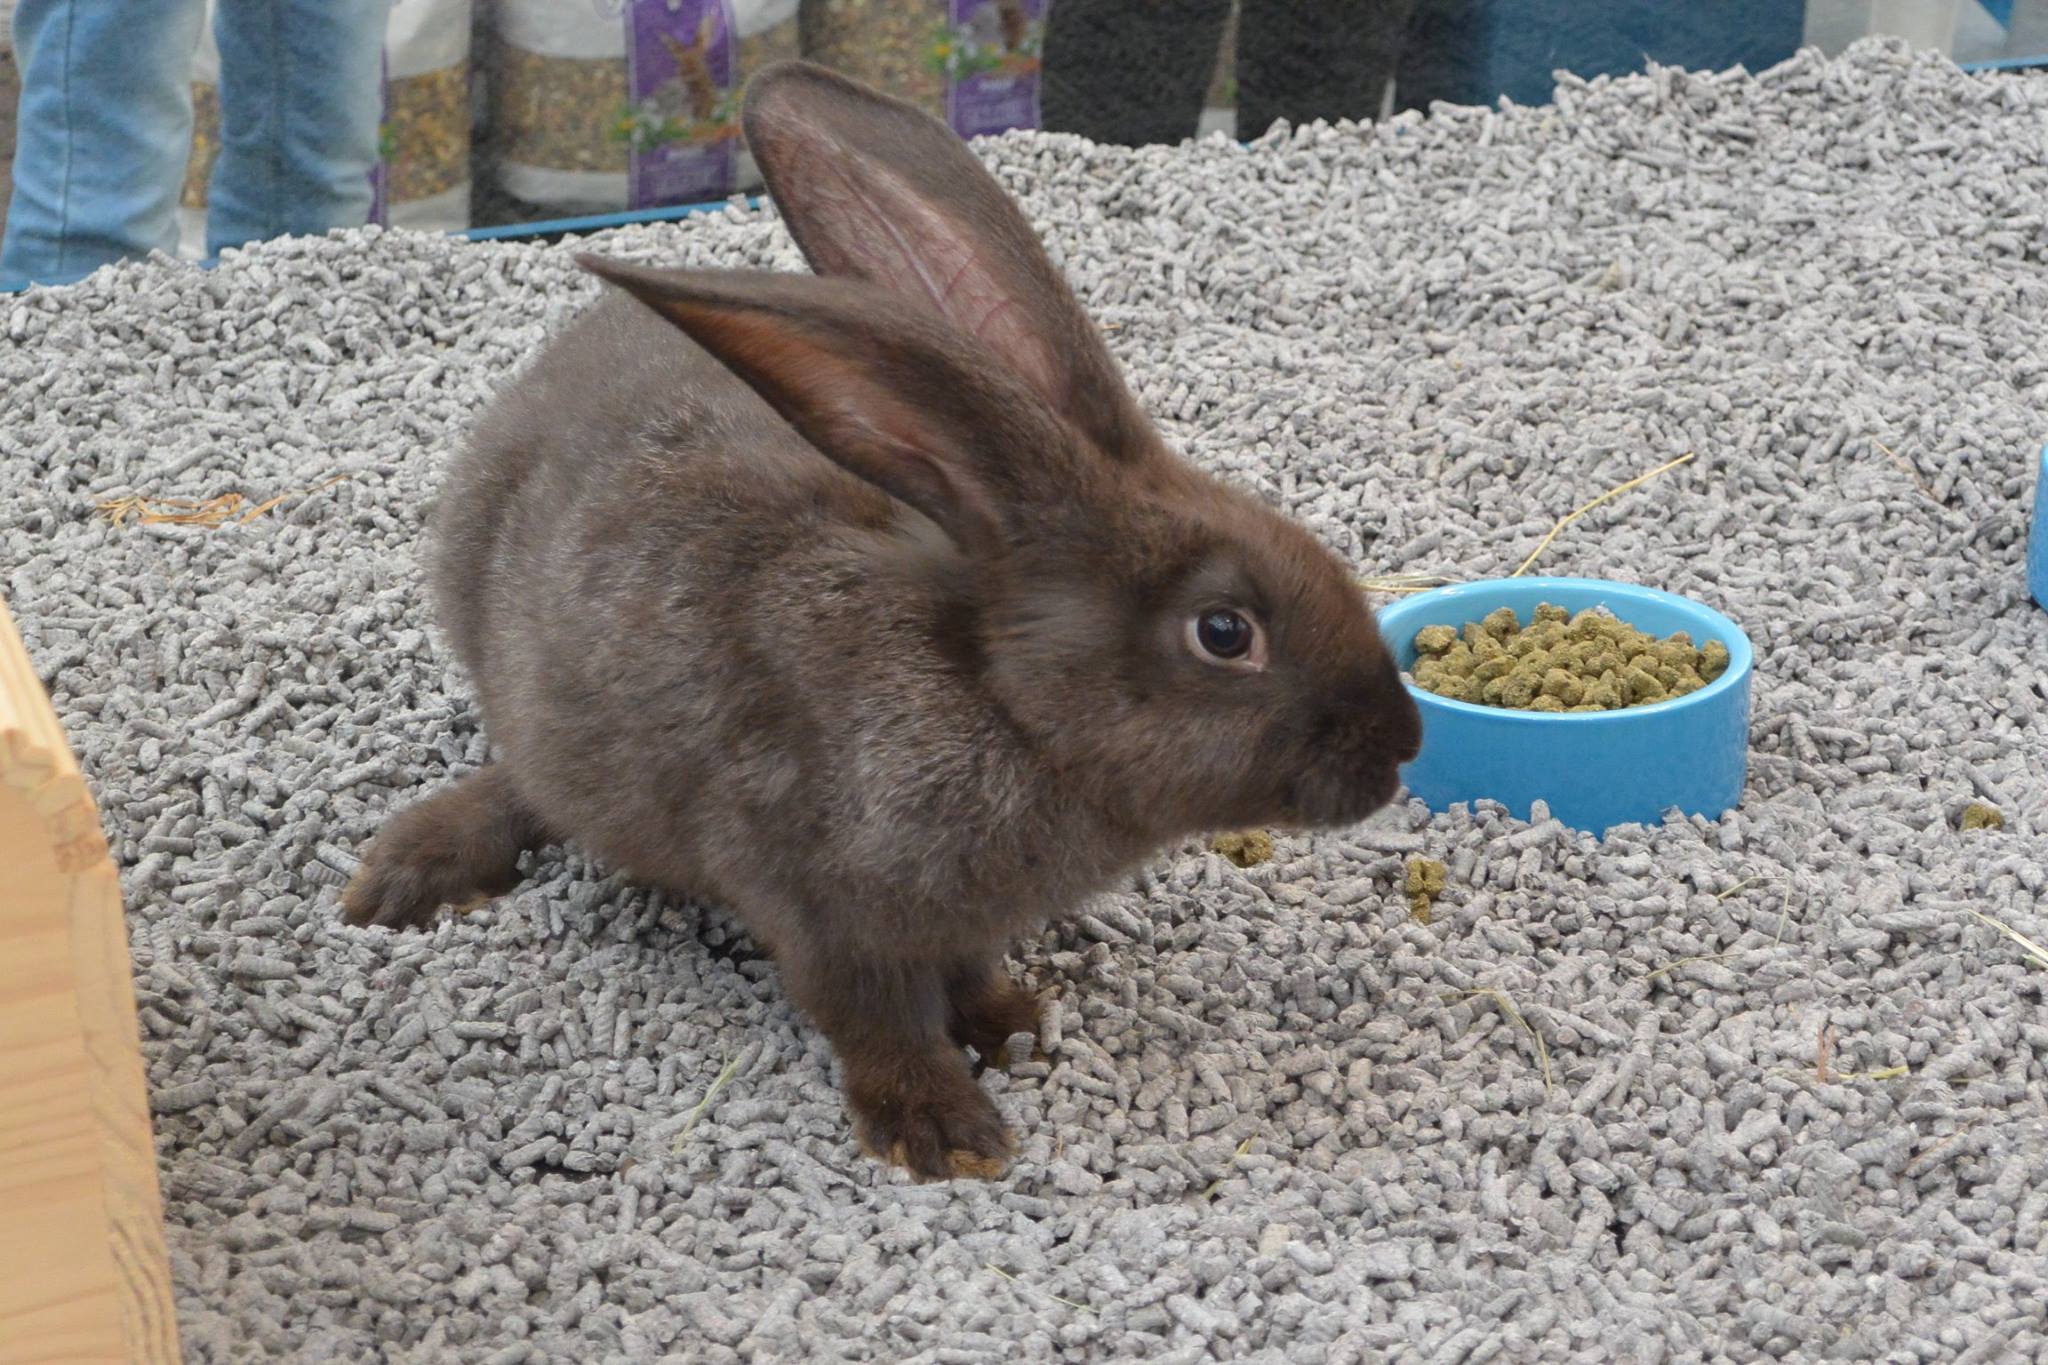 Bekijk de lieve konijntjes in onze dierenwinkel nabij Den Haag!